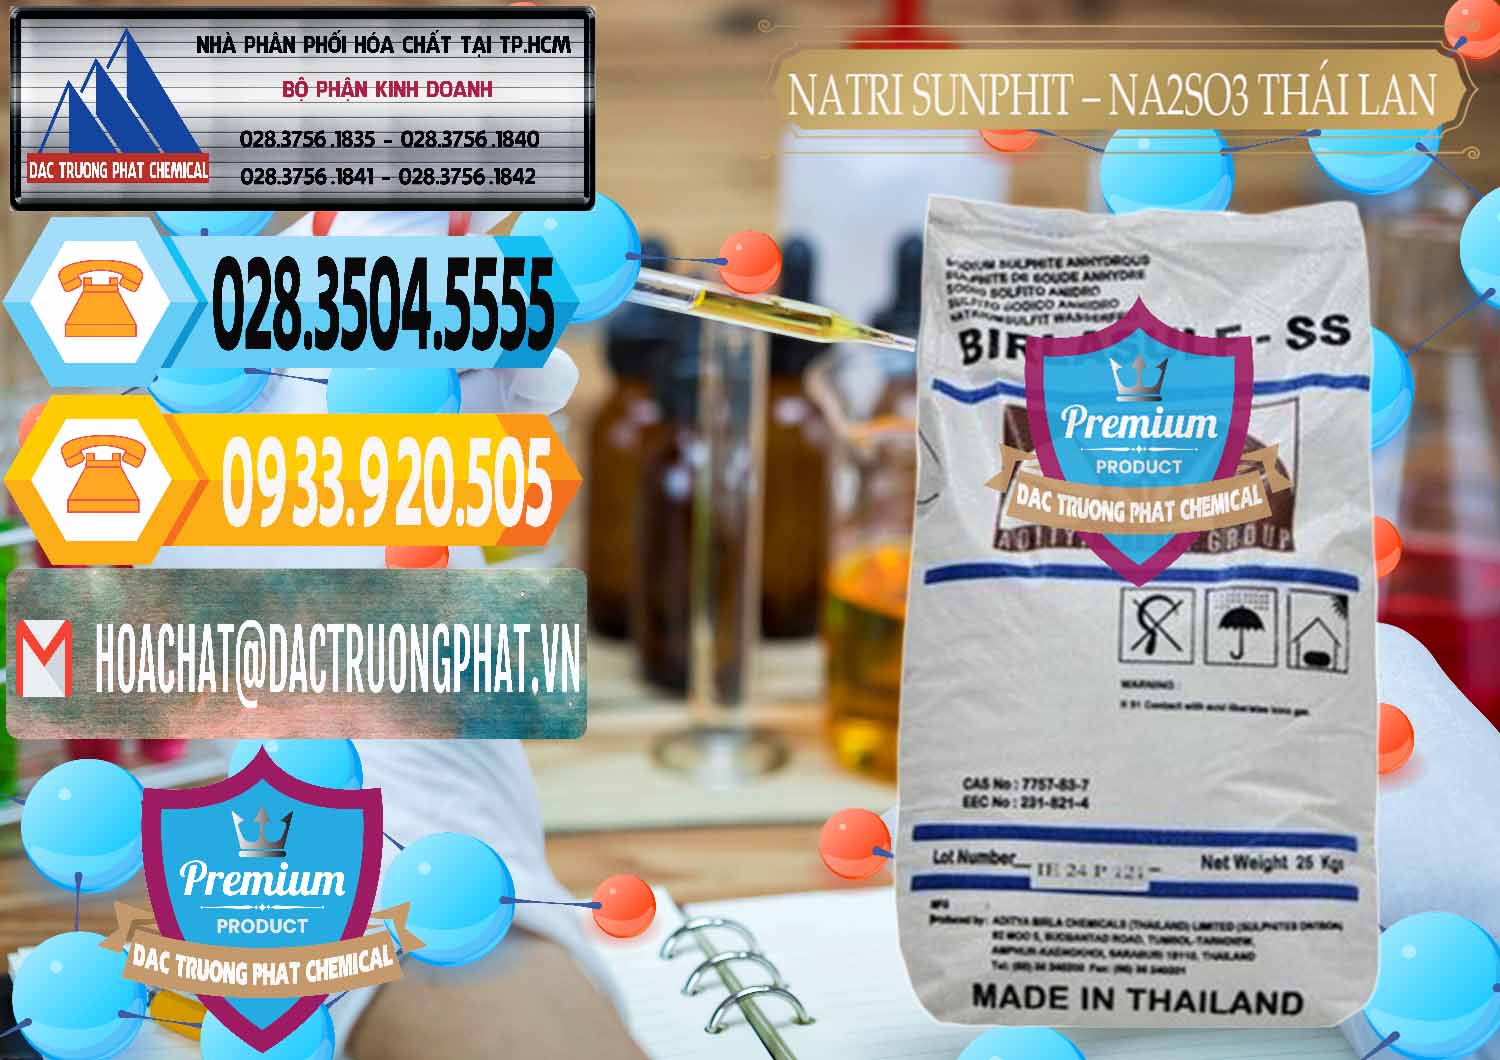 Nơi chuyên bán & cung cấp Natri Sunphit - NA2SO3 Thái Lan - 0105 - Đơn vị kinh doanh - phân phối hóa chất tại TP.HCM - hoachattayrua.net